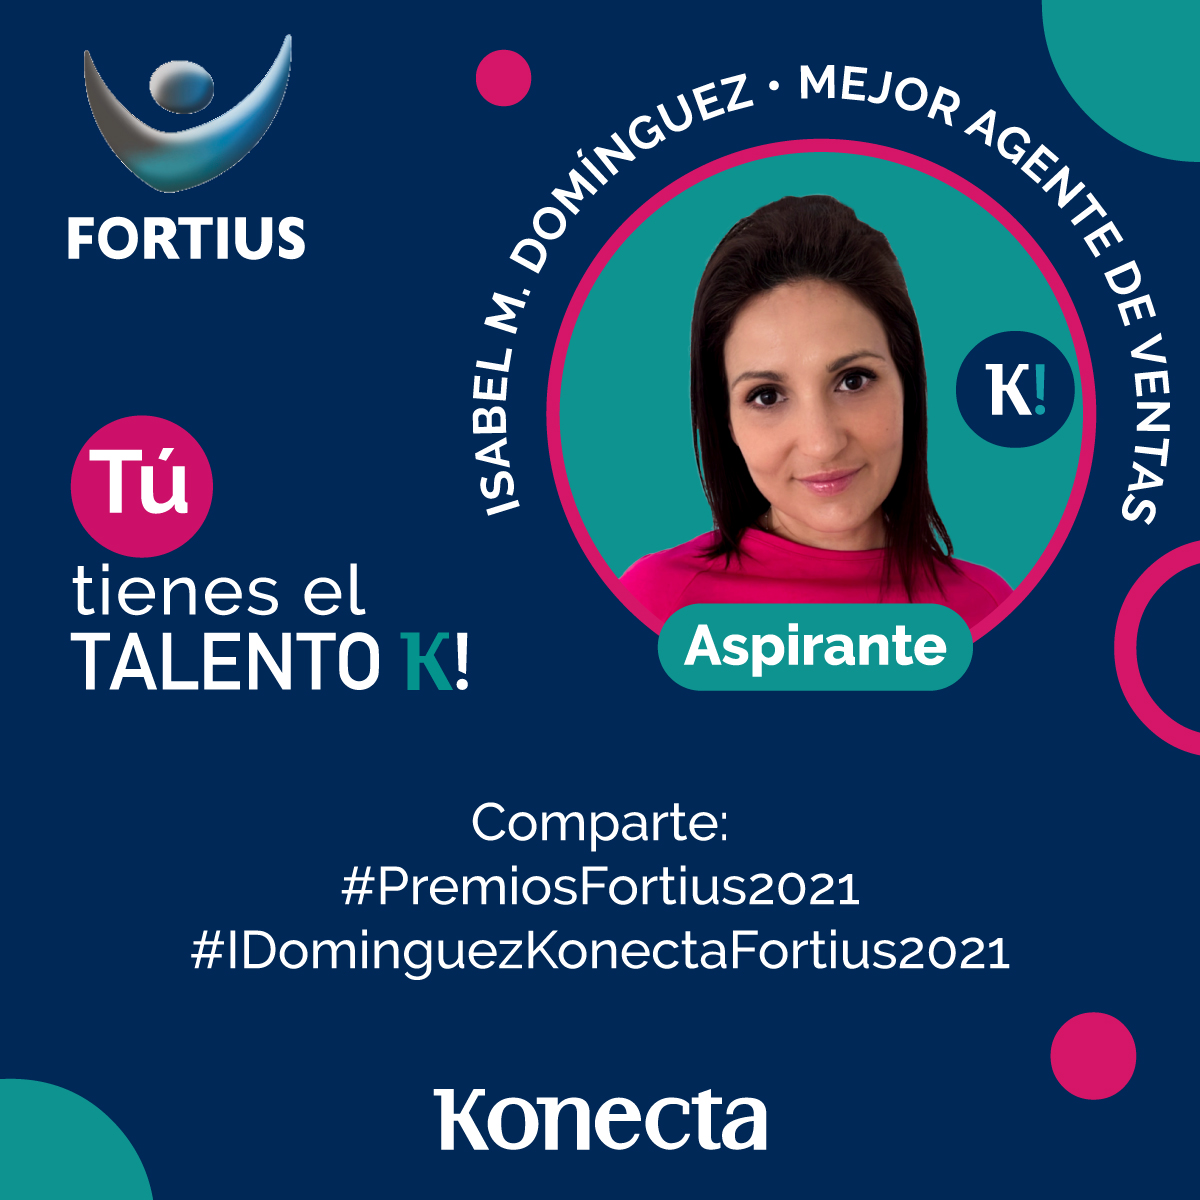 Queremos darle todo nuestro apoyo a Isabel Domínguez en su candidatura a los @PremiosFortius , a mejor Agente de Ventas. ¡Mucha suerte compañera! Apoya su candidatura comentando con los hashtags #IDominguezKonectaFortius2021 #PremiosFortius2021